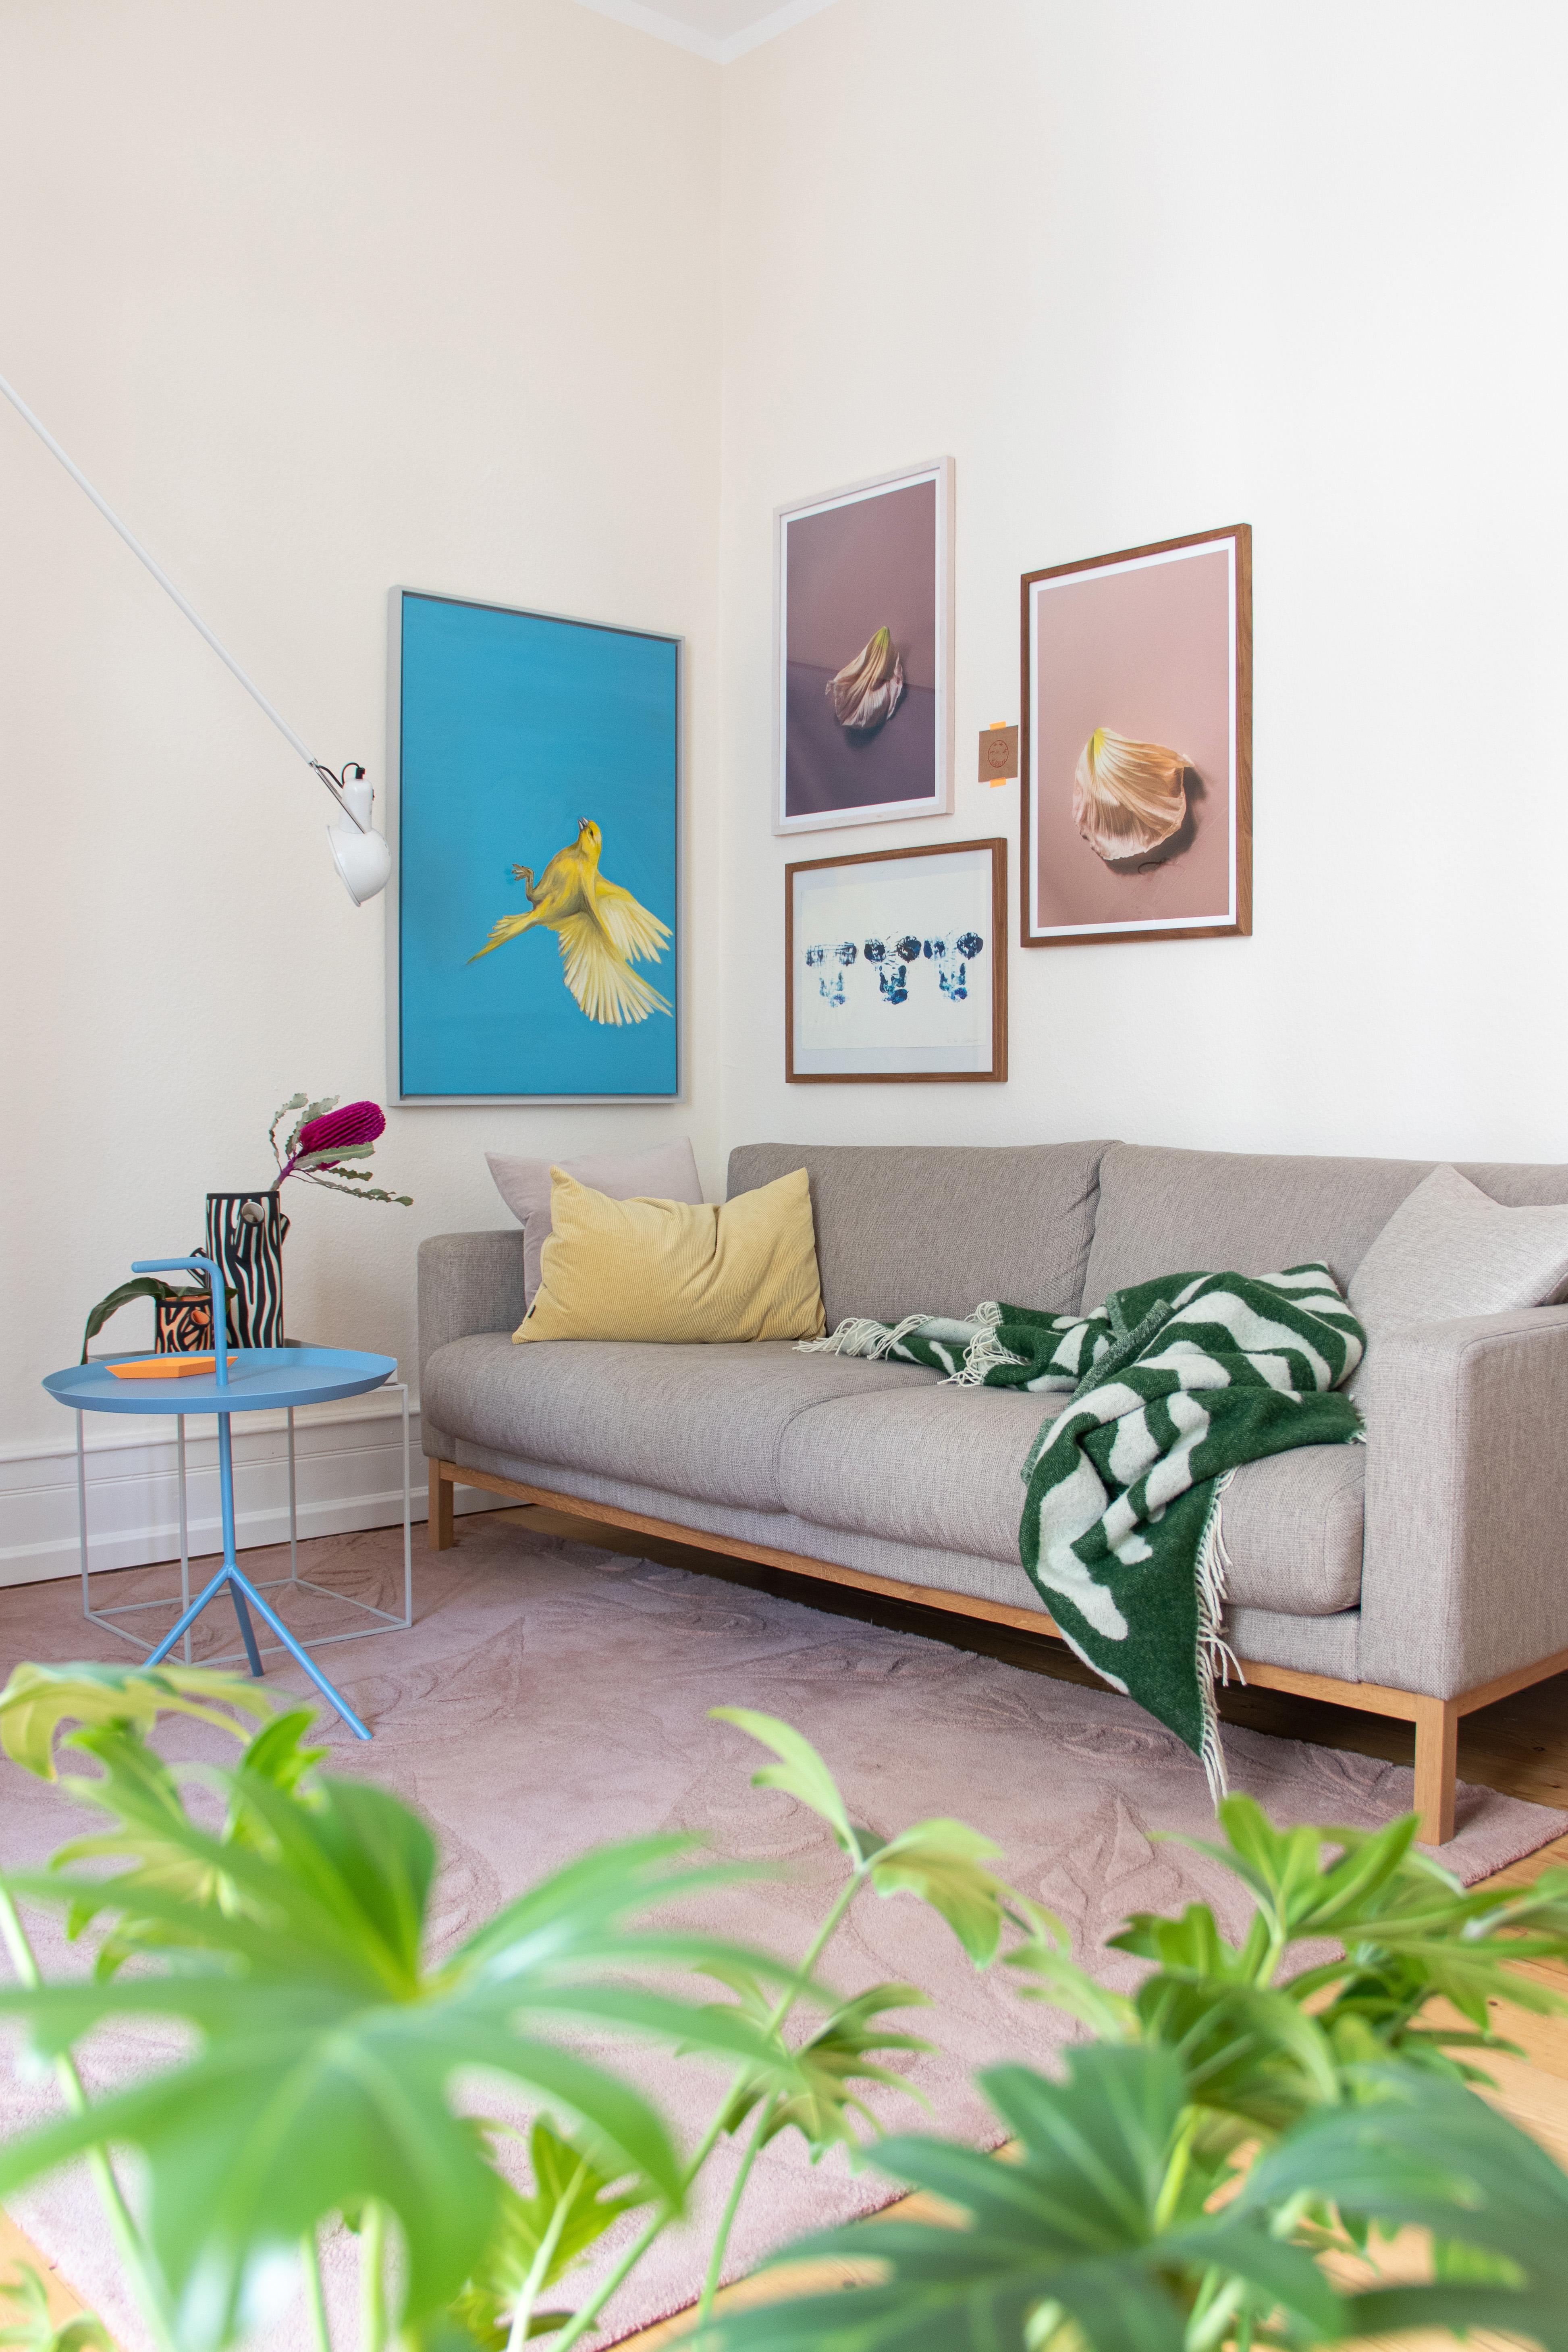 #wohnzimmer #farbenfroh #couchliebt #pastell #gallerywall #kunst #fotografie #sofa #teppich #beistelltisch #grün #blau